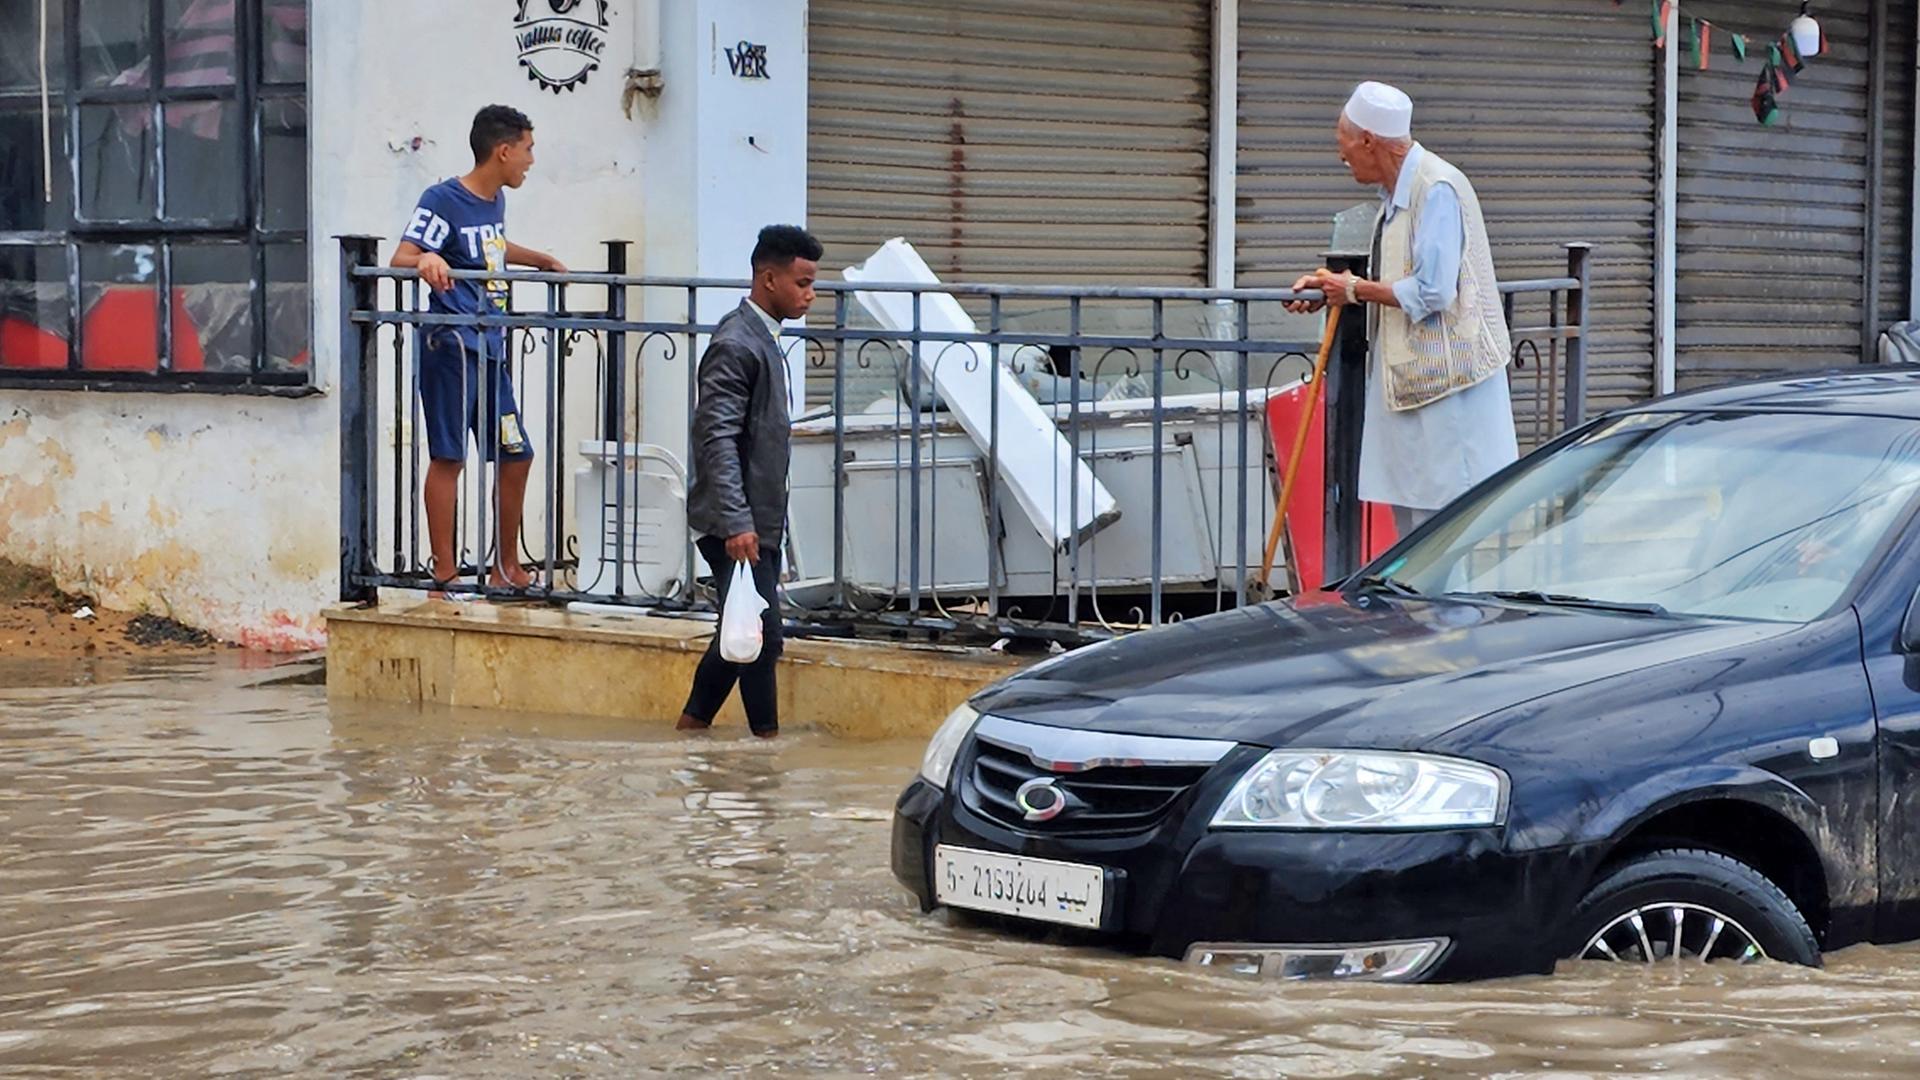 Ein Auto fährt durch das kniehohe Wasser, ein Mann watet hindurch. Auf einer Terasse vor einem Gebäude dahinter stehen ein Jugendlicher und ein älterer Mann.